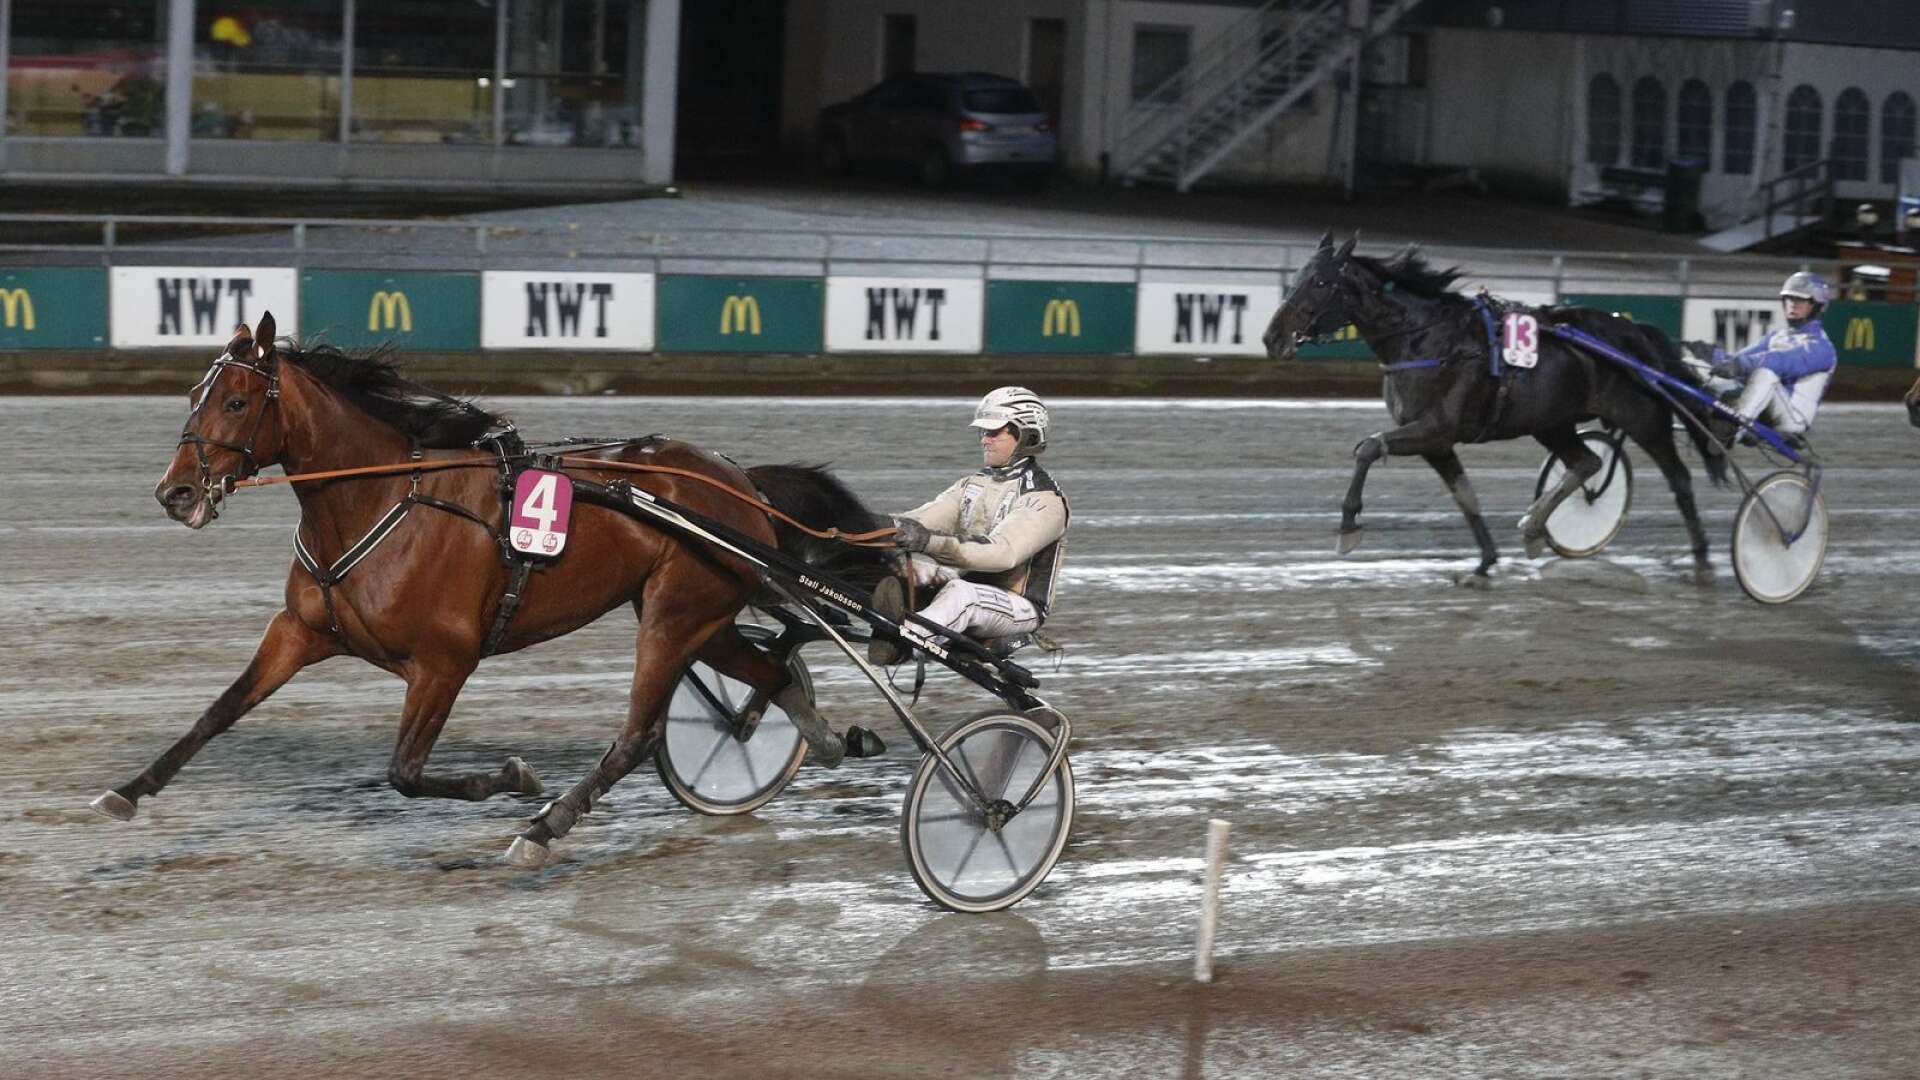 Global Bienvenue ordnade en av två vinster för Magnus Jakobsson på Färjestad under lördagskvällen.